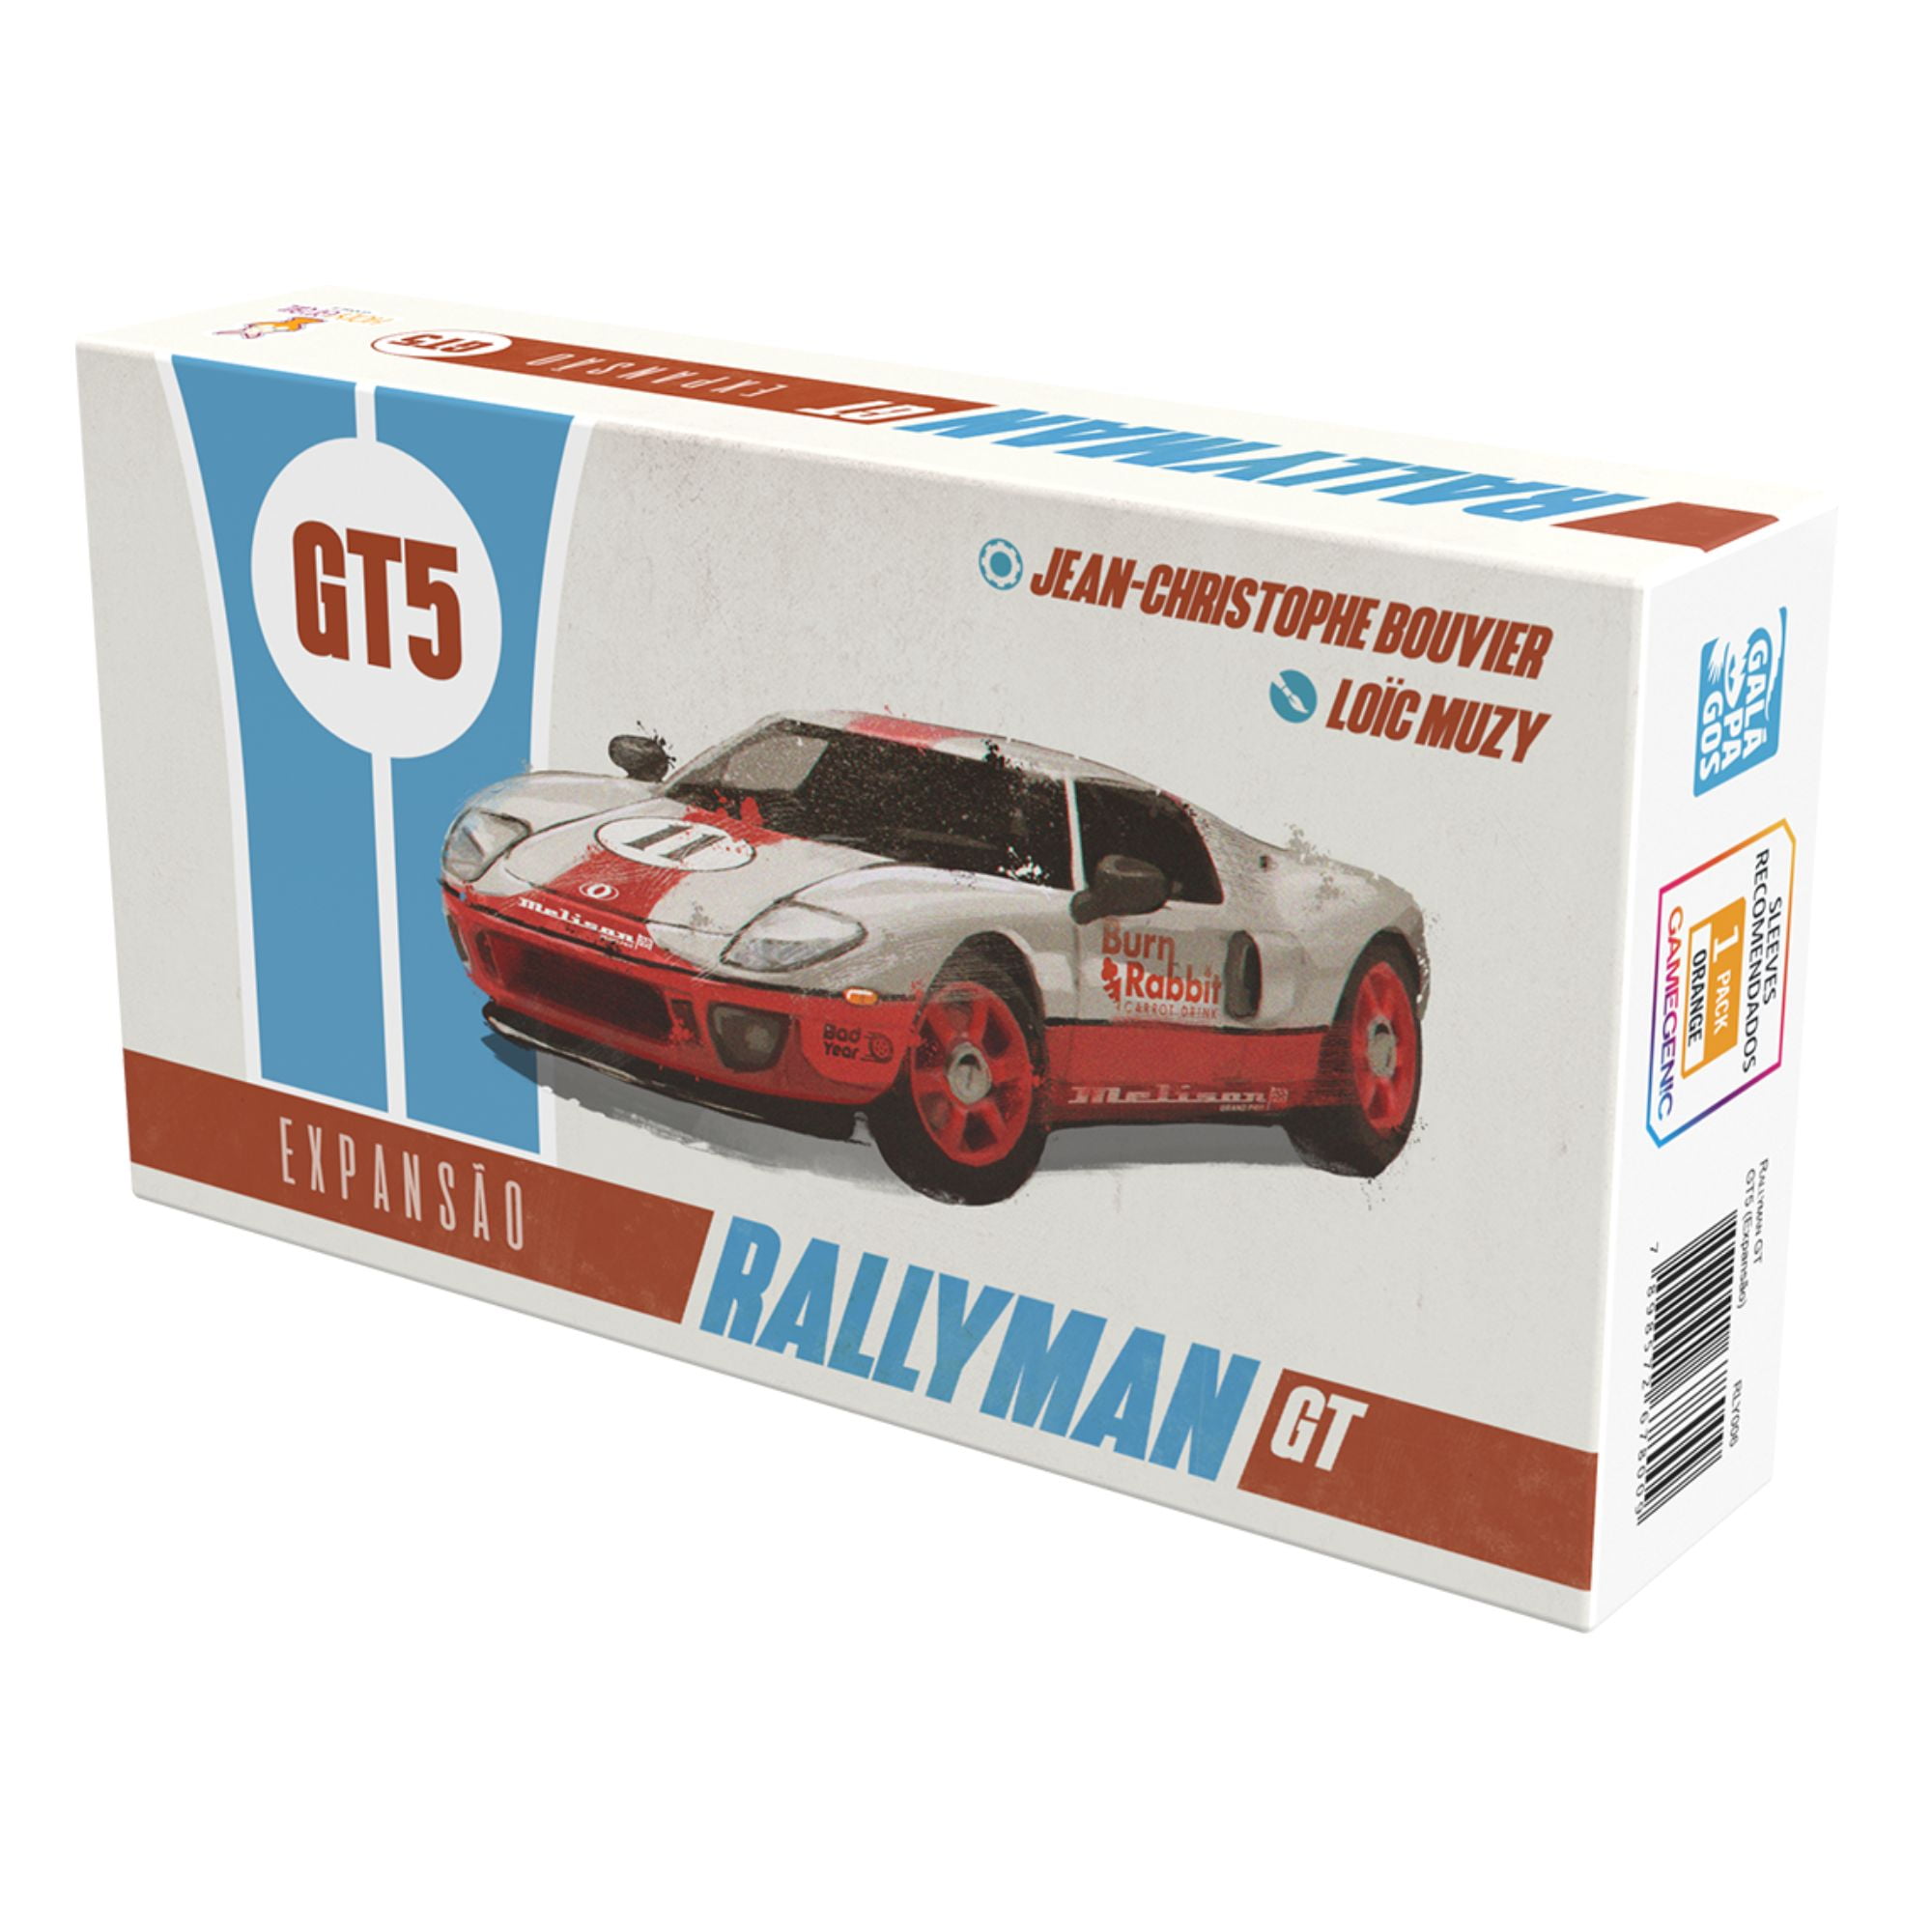 Expansão Rallyman GT: GT5 